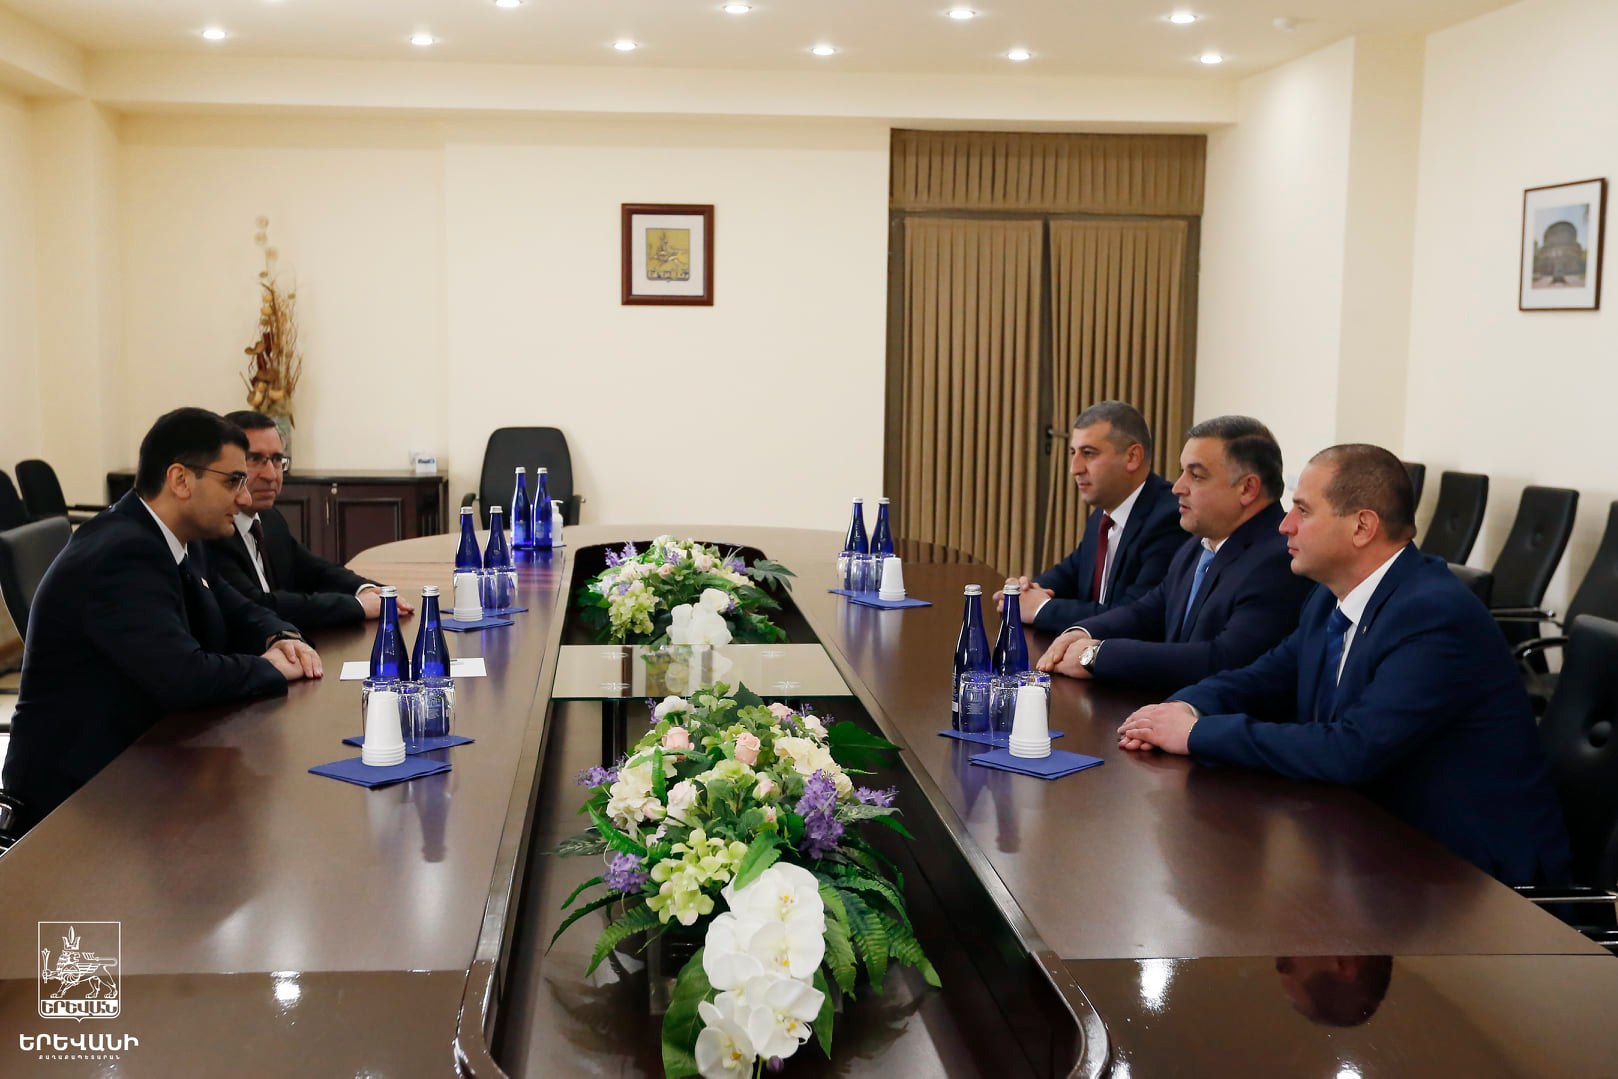 Мэр Еревана встретился со своим коллегой из Степанакерта